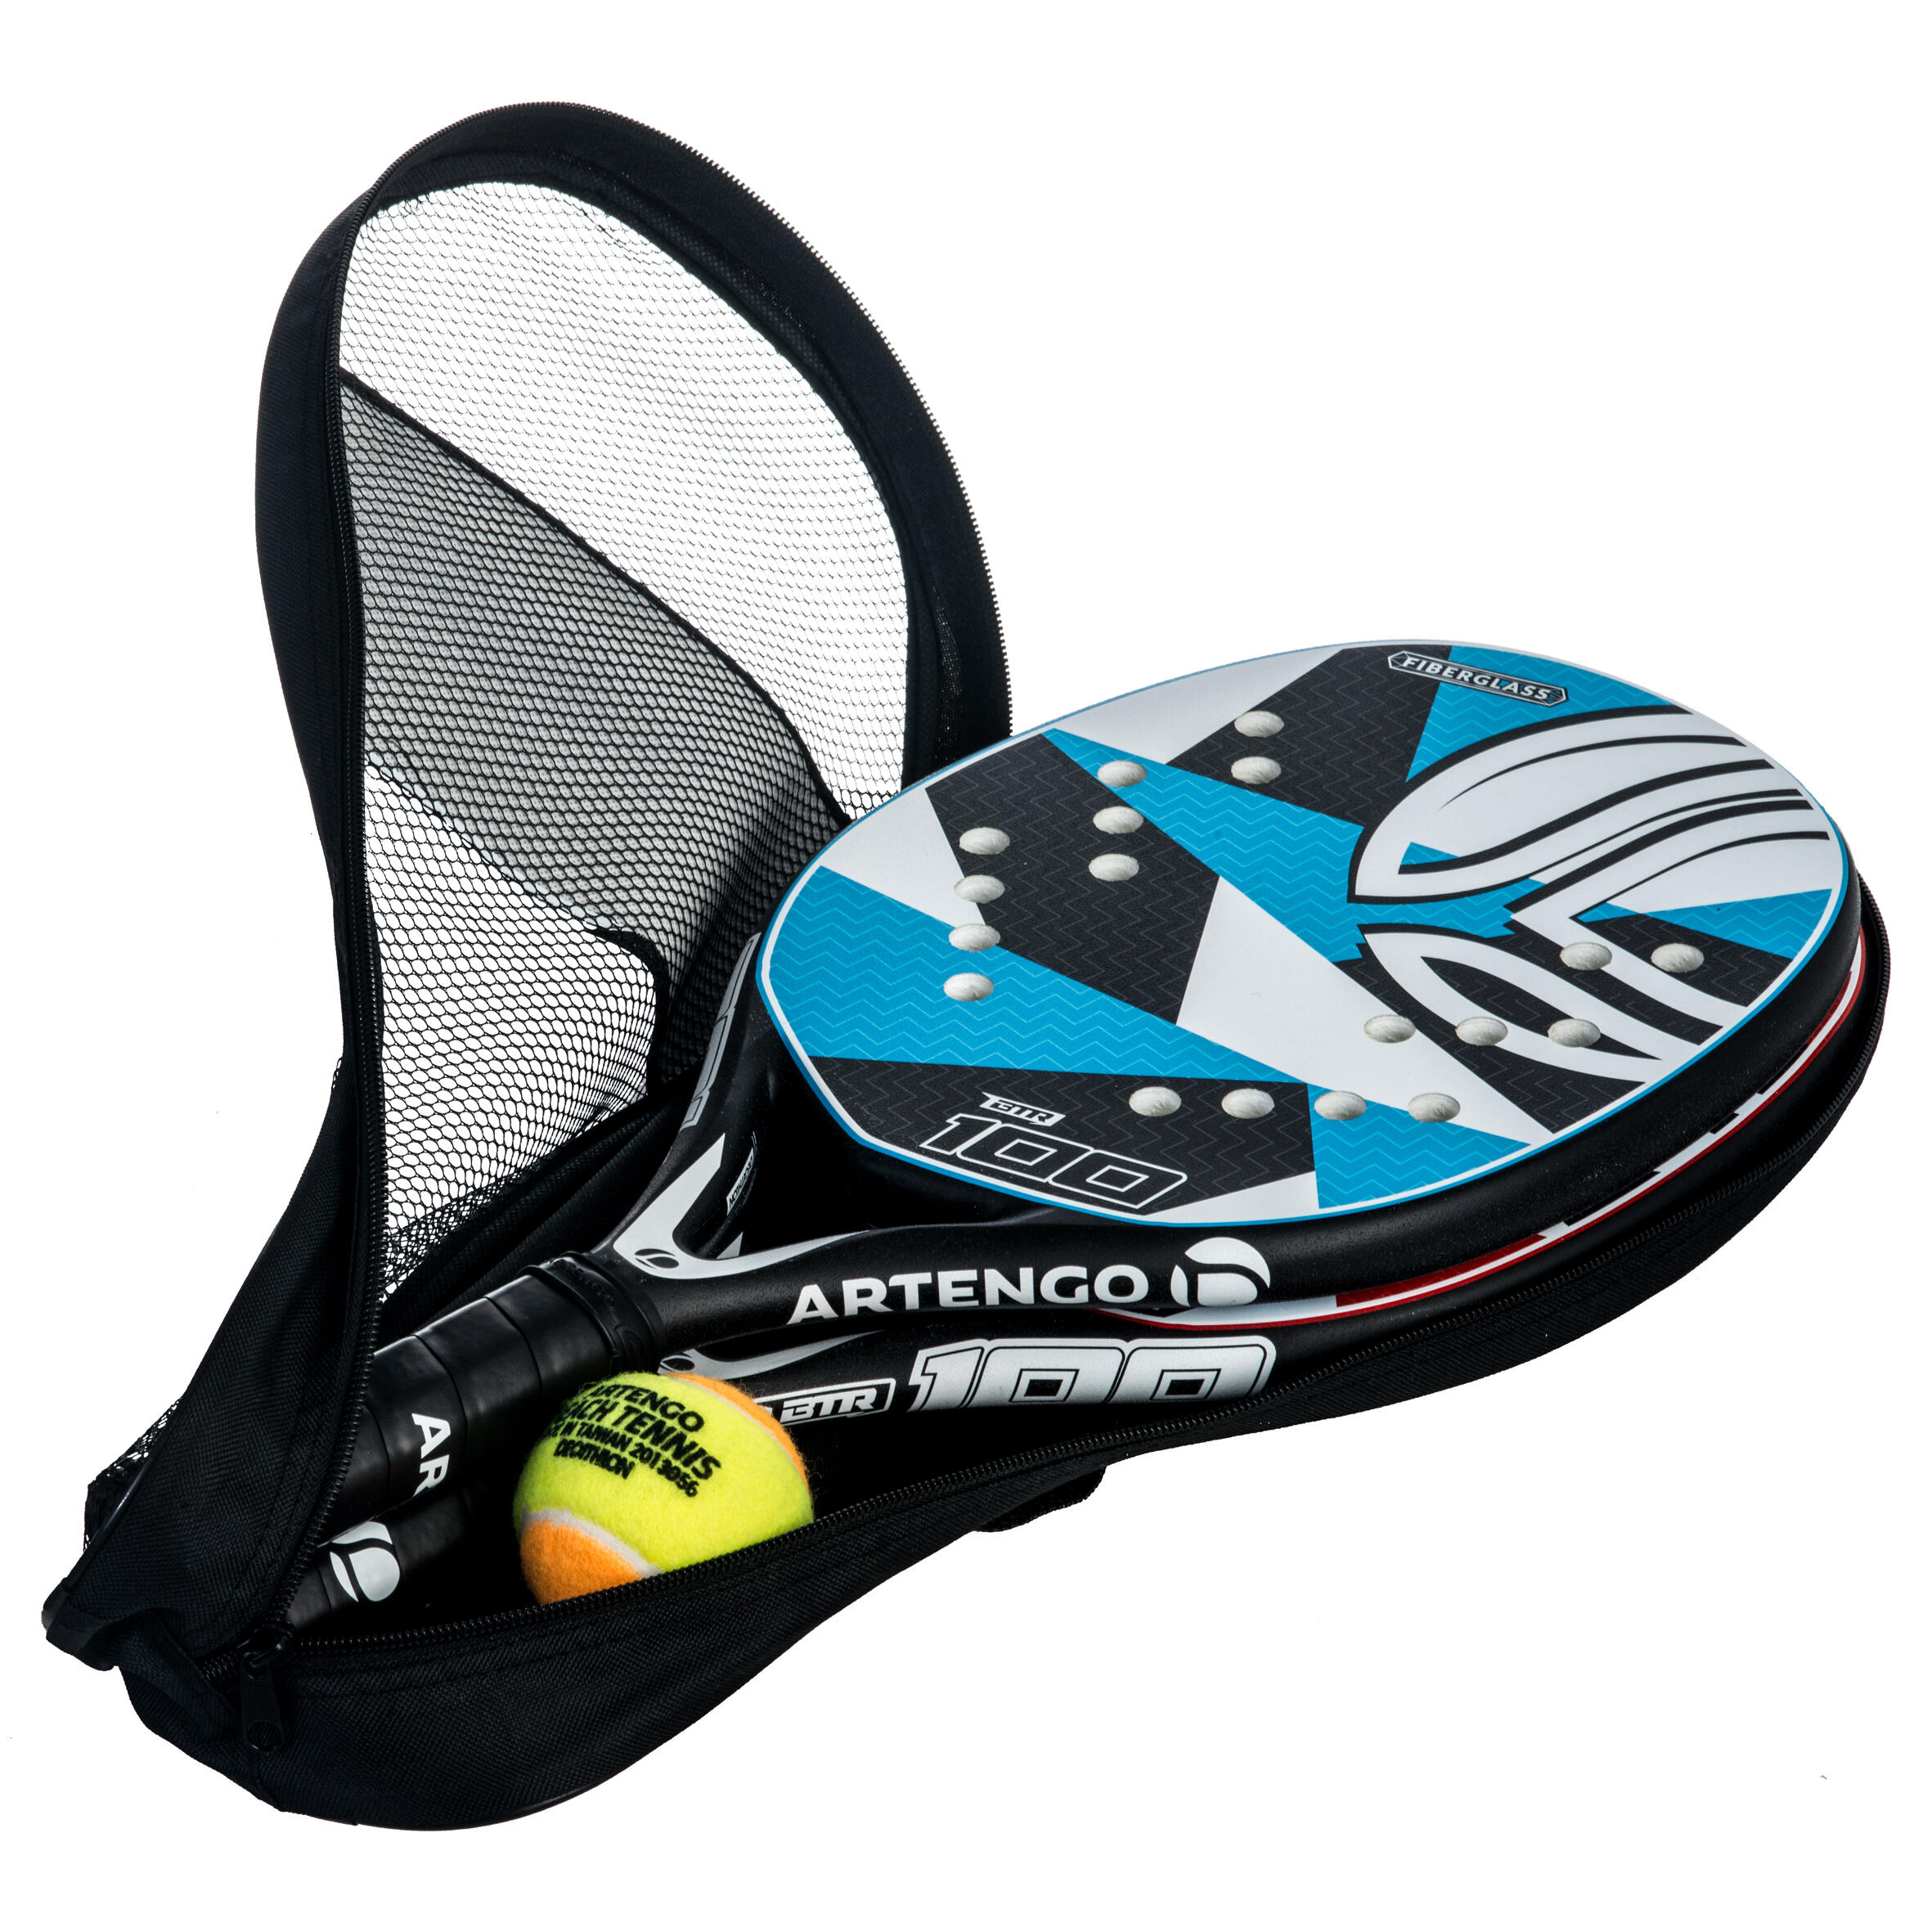 BTR 100 Beach Tennis Racket Set ARTENGO 